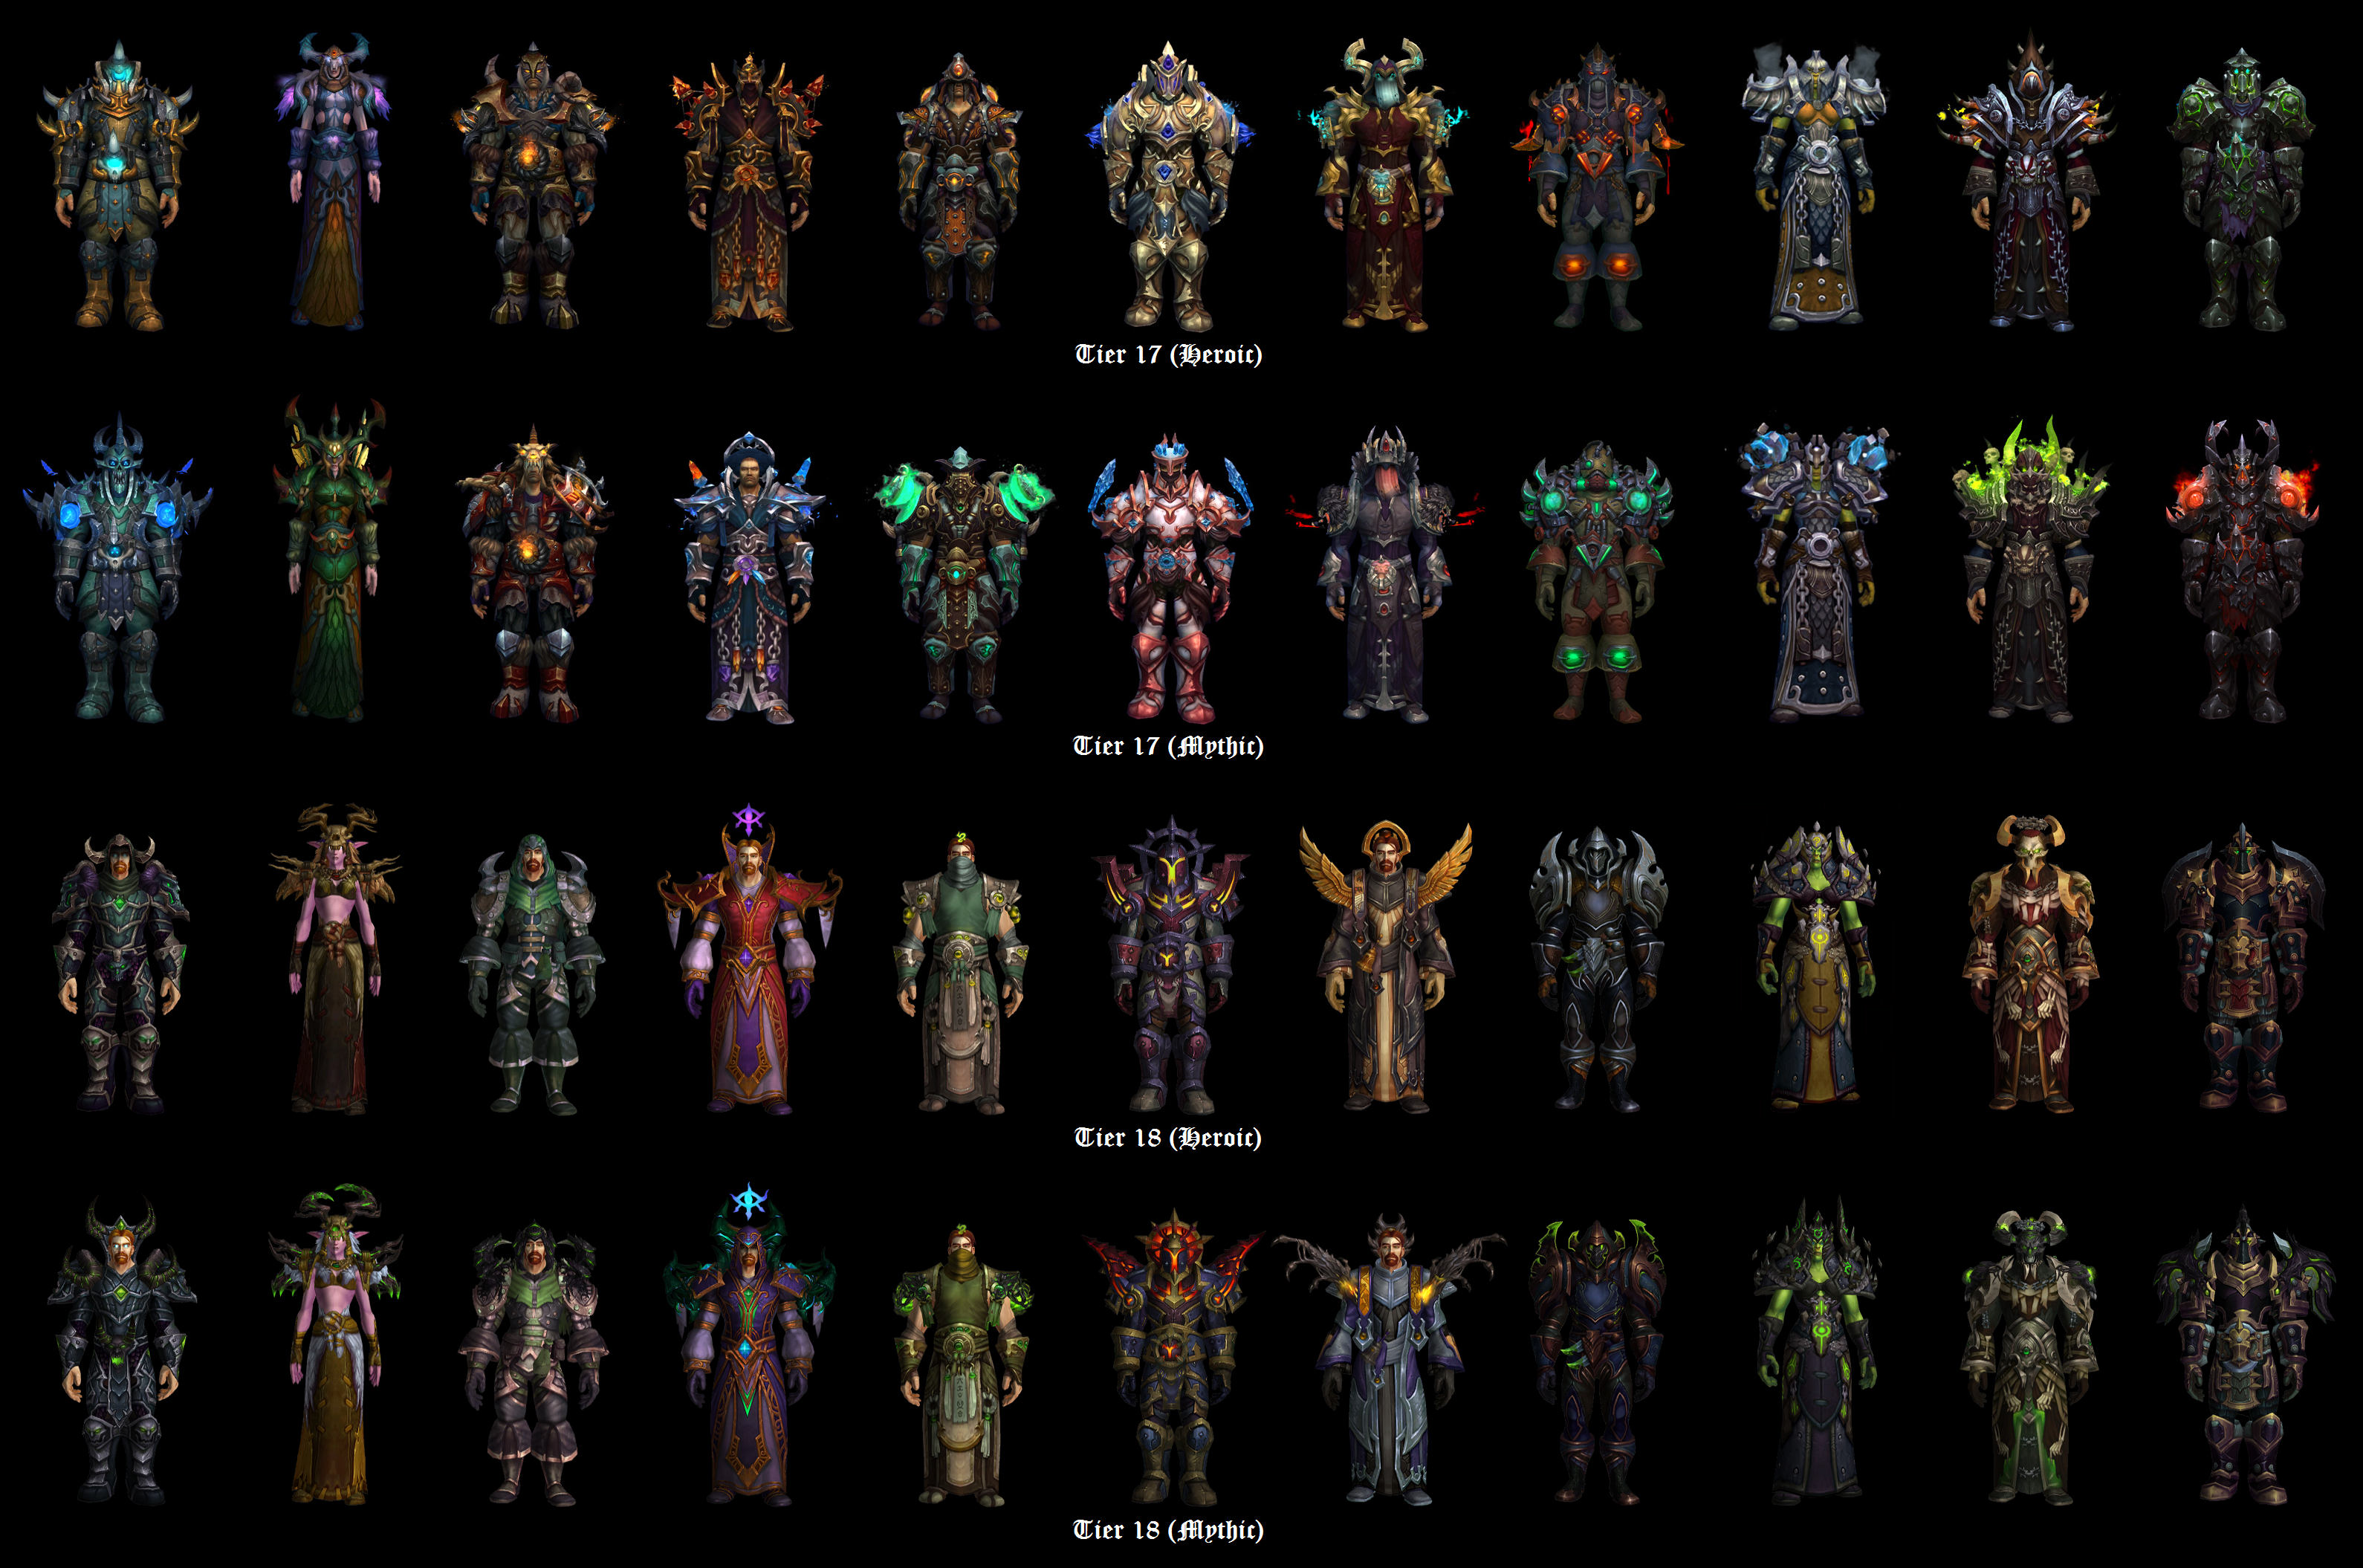 tier 18 armor sets